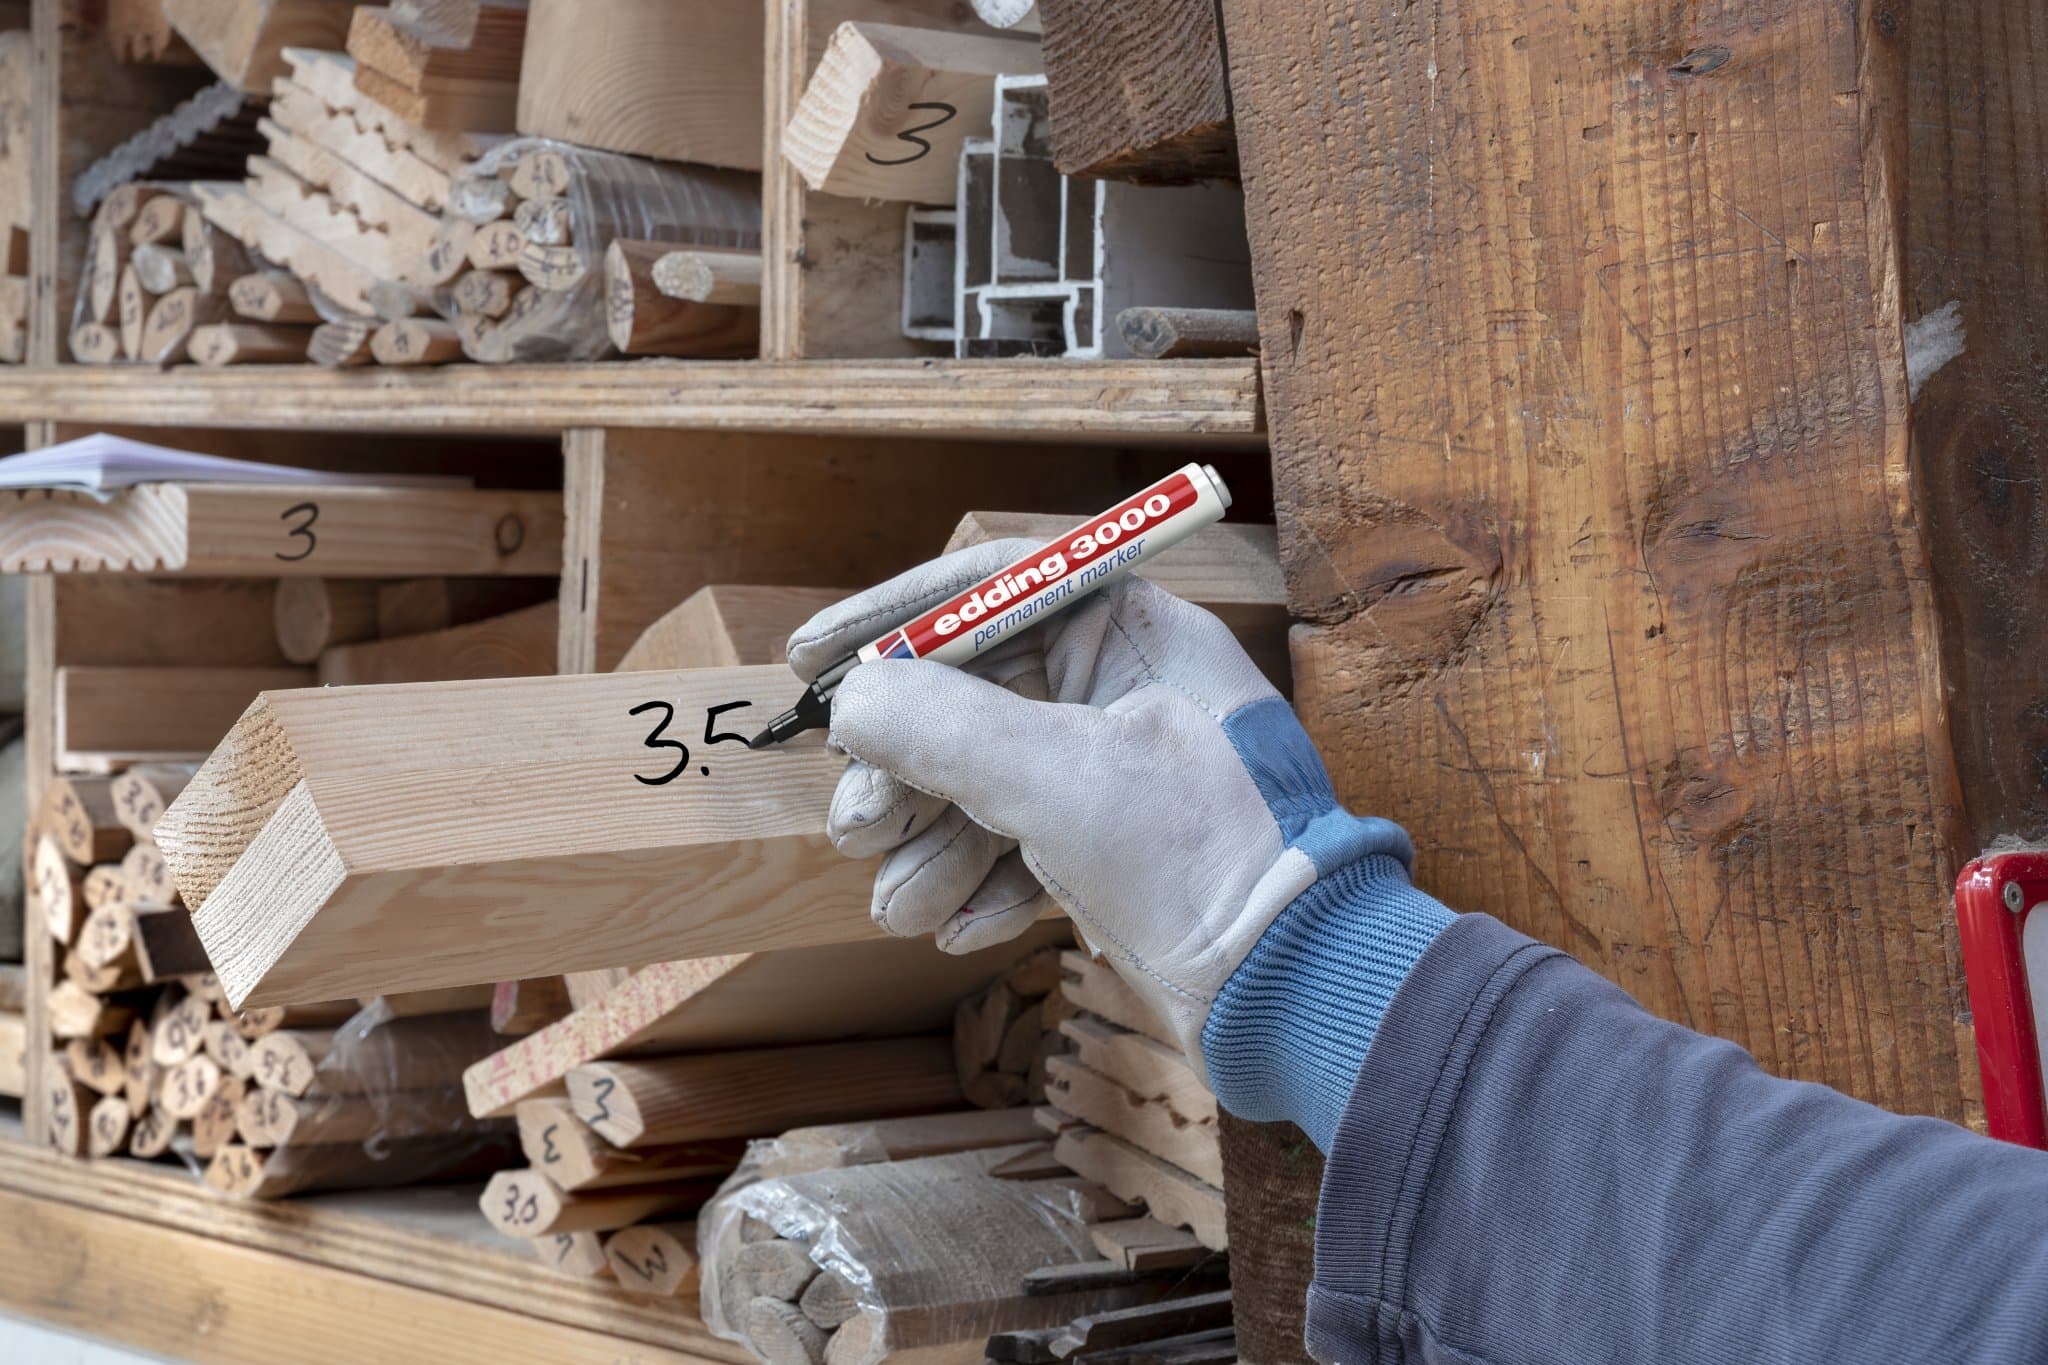 Ein Handwerker markiert ein Stück Holz mit einem edding 3000 Permanentmarker in einer Holzwerkstatt, die mit verschiedenen Holzmaterialien auf Regalen gefüllt ist.